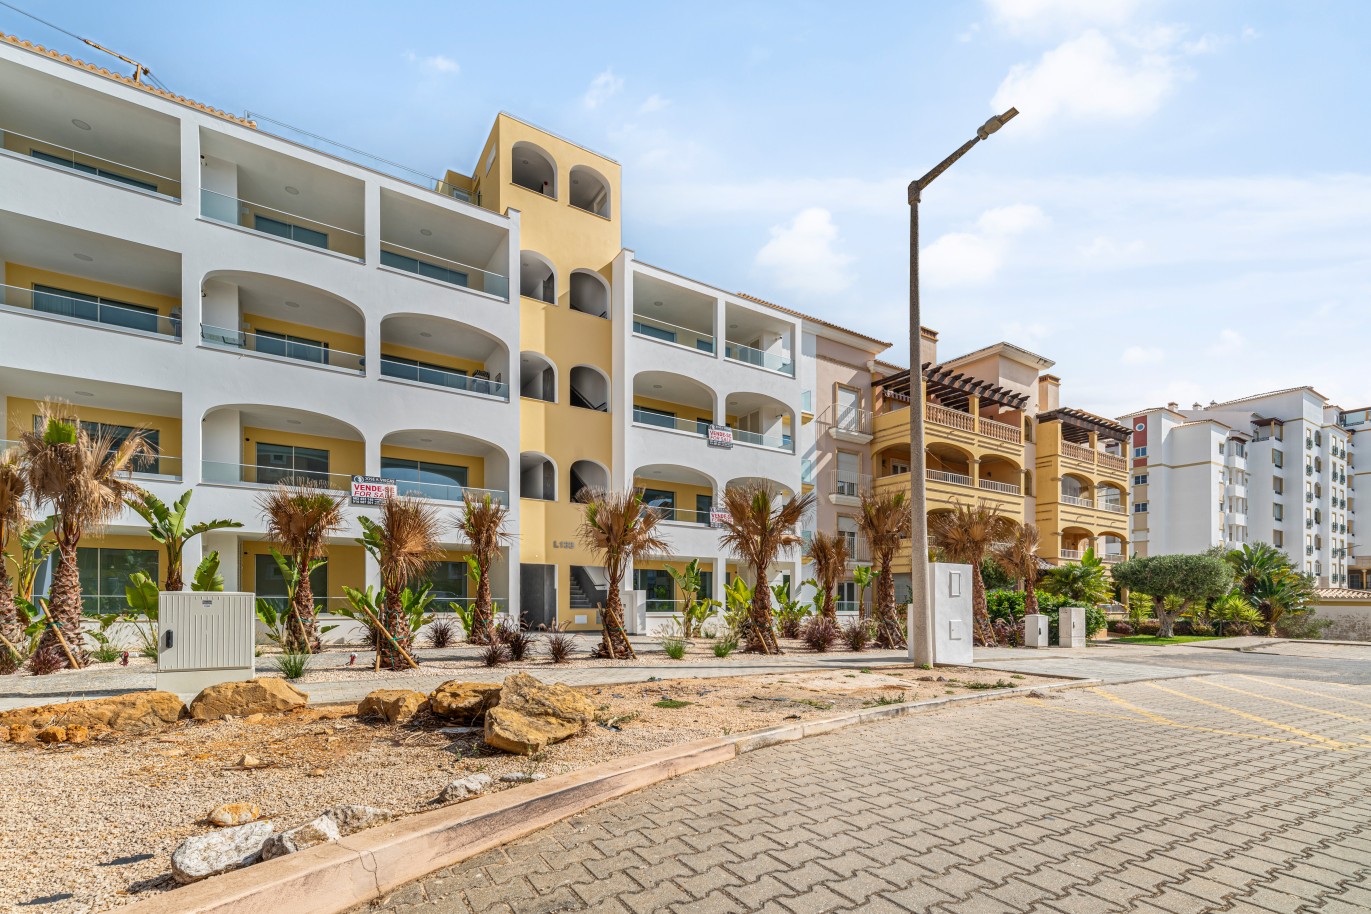 Verkauf einer Wohnung im Bau, mit Terrasse, Lagos, Algarve, Portugal_238266